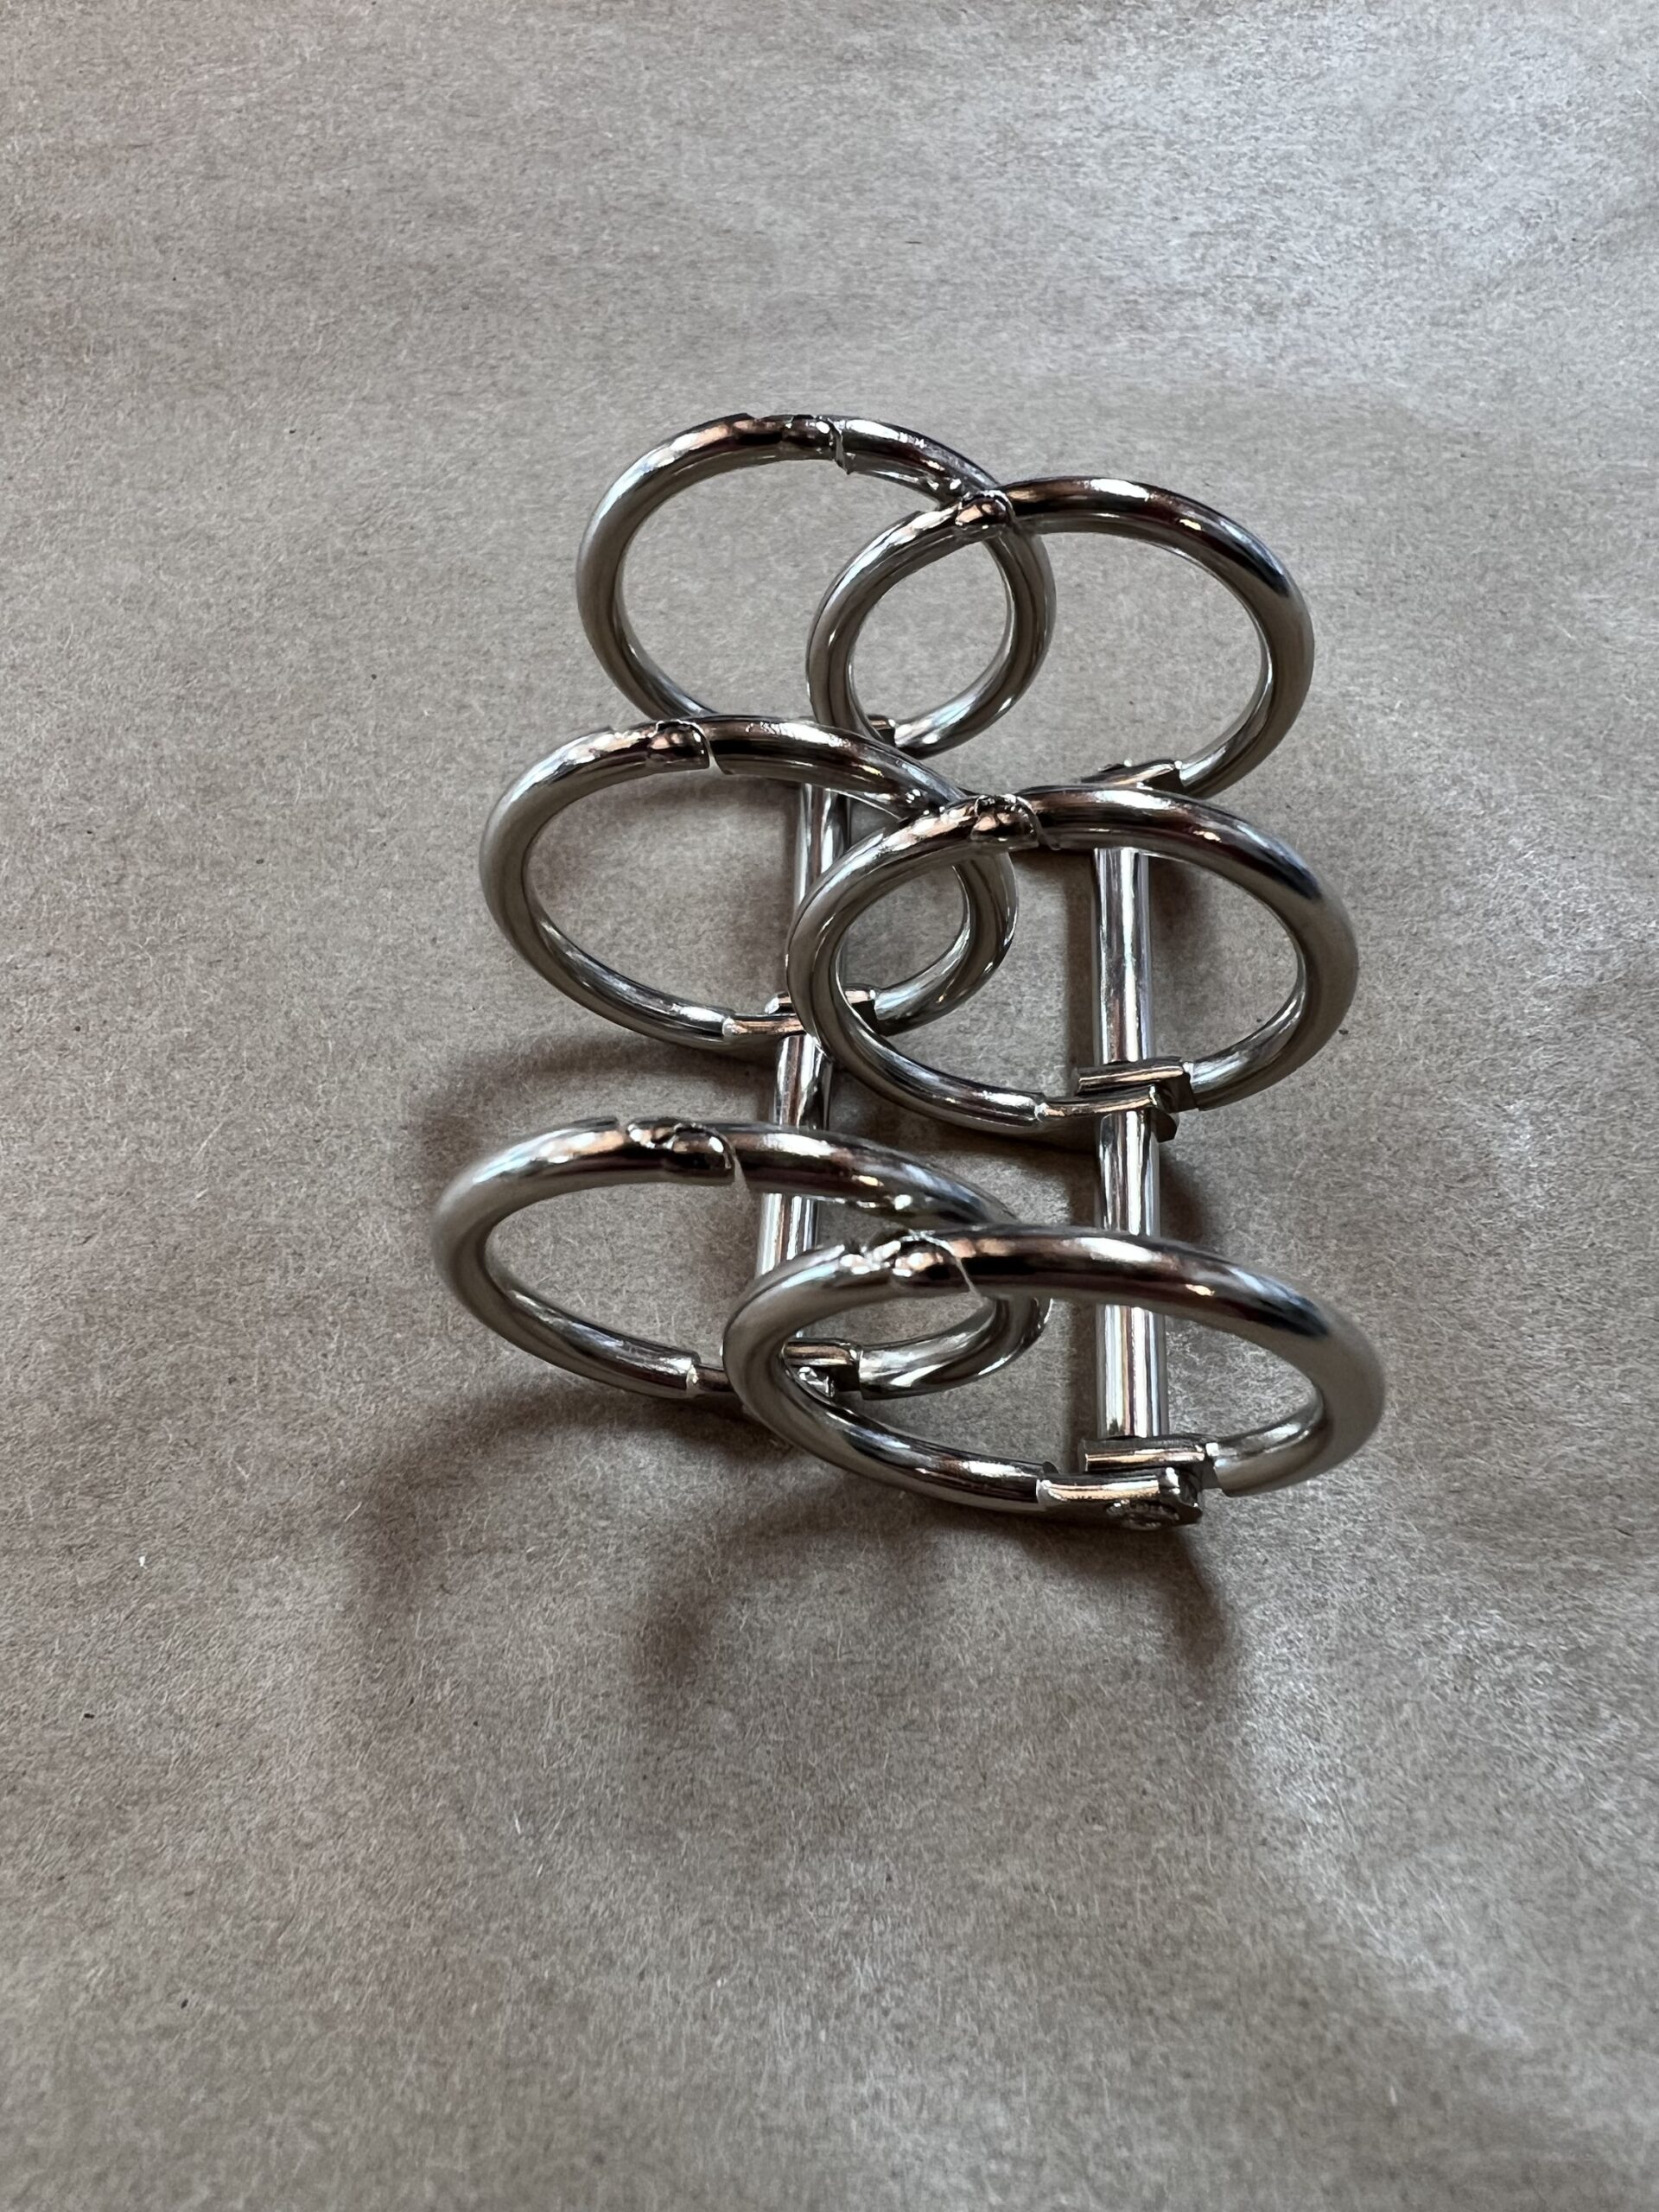 2.5cm metal rings binder loose leaf| Alibaba.com